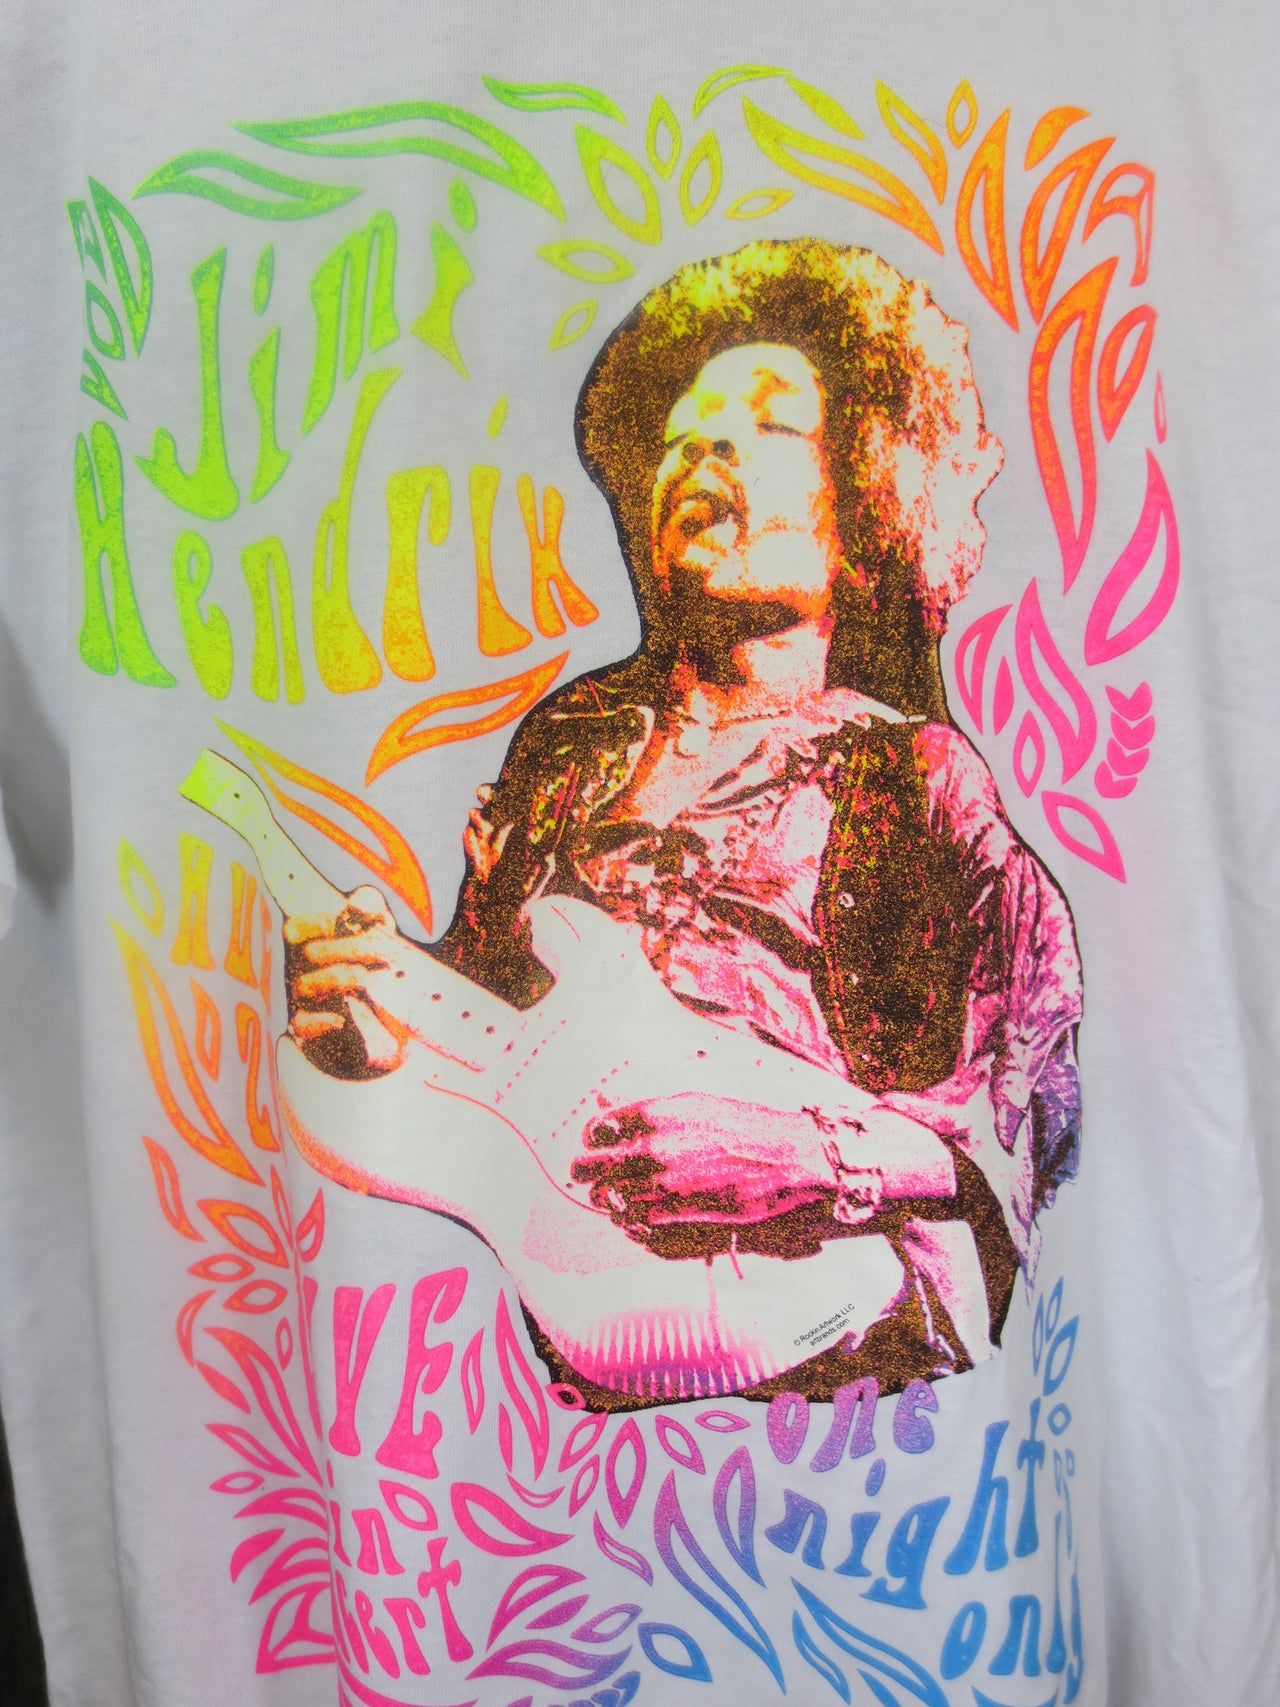 Jimi Hendrix Neon One Night White tshirt - TshirtNow.net - 2